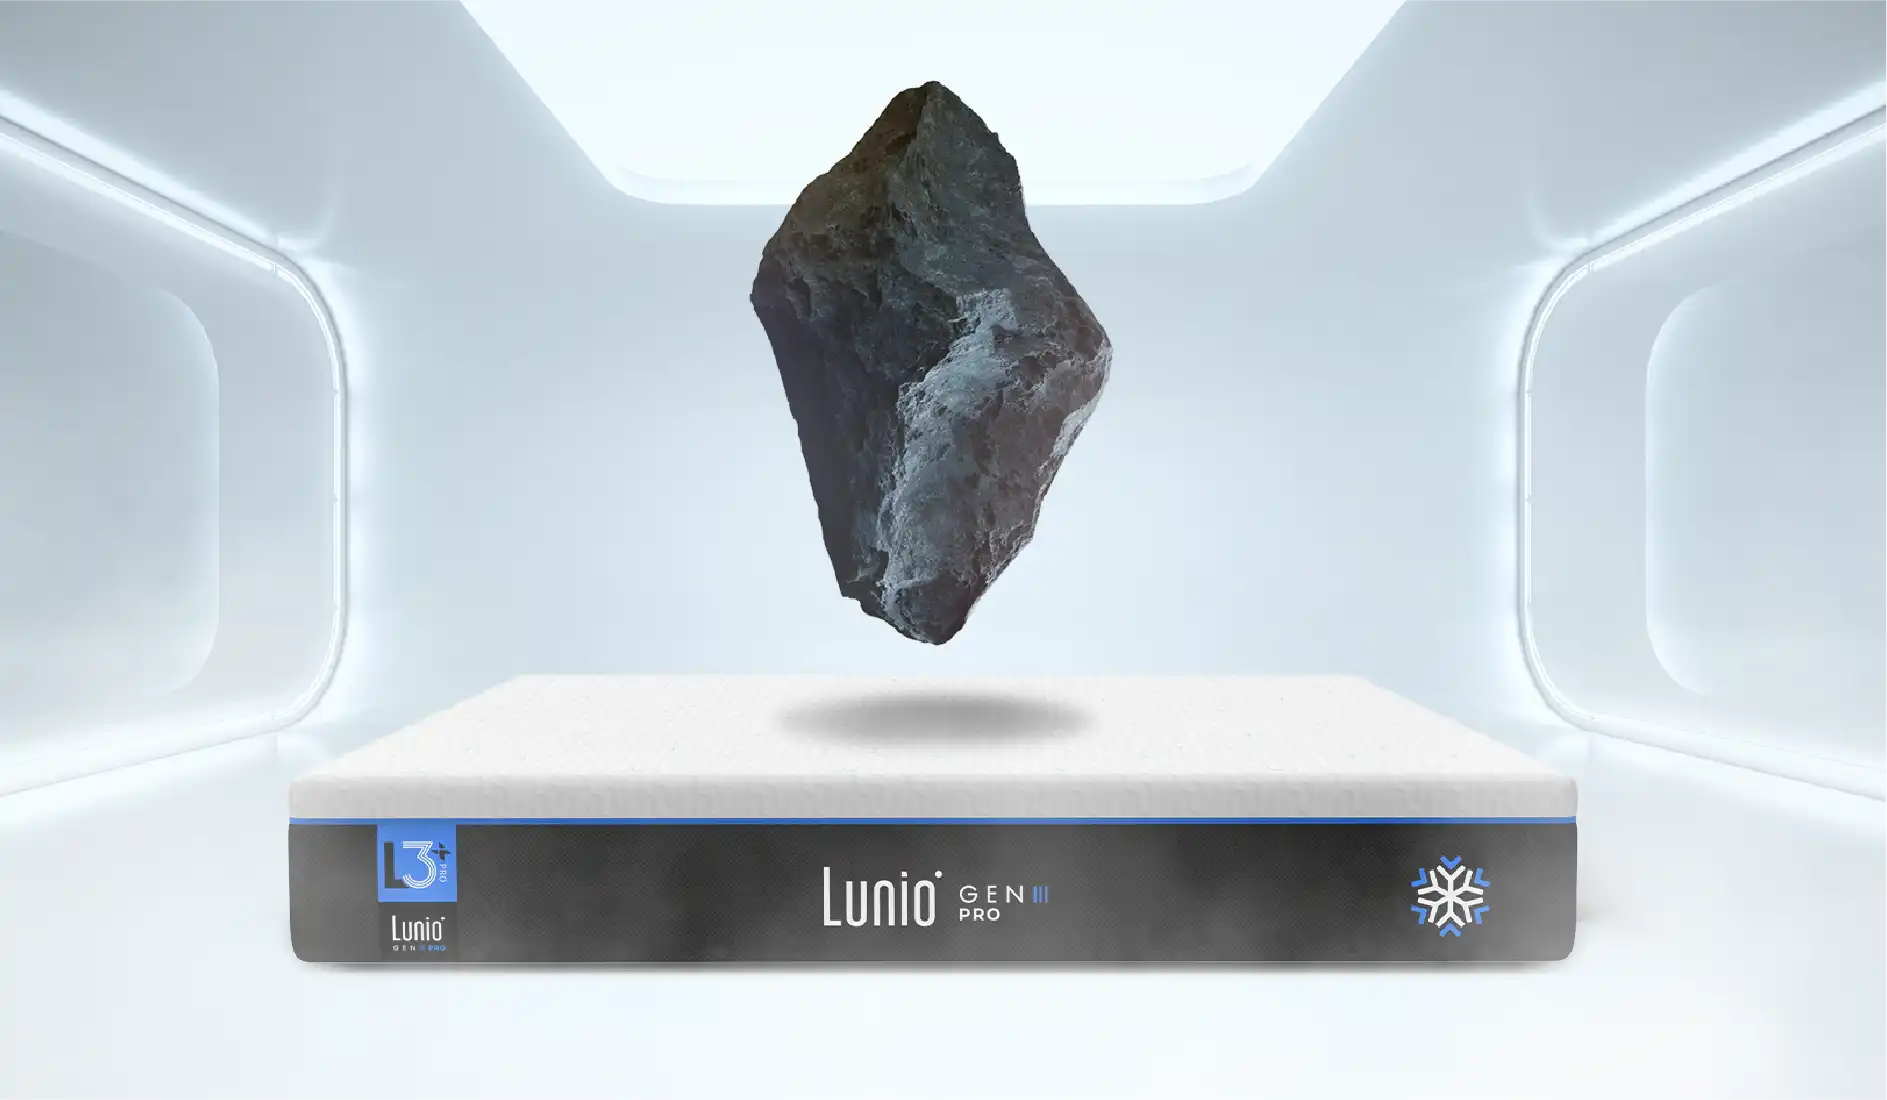 Lunio 石墨烯精密吸震平衡系統®